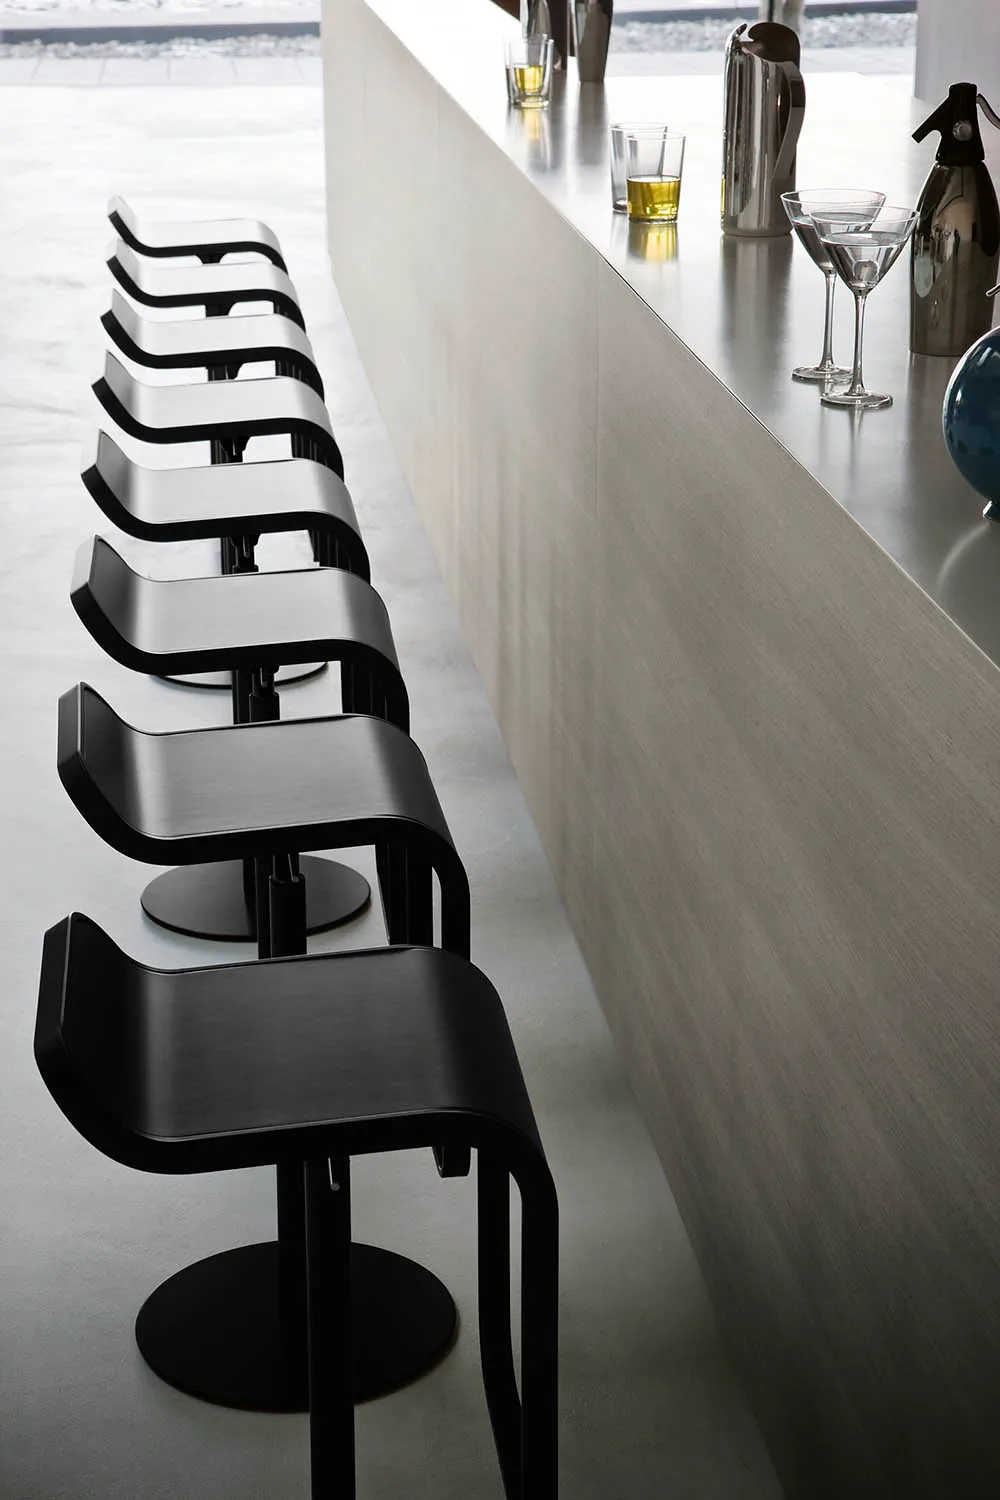 Klasseværelse For det andet blad LEM barstol sort Lapalma | Italiensk møbeldesign | Køb online